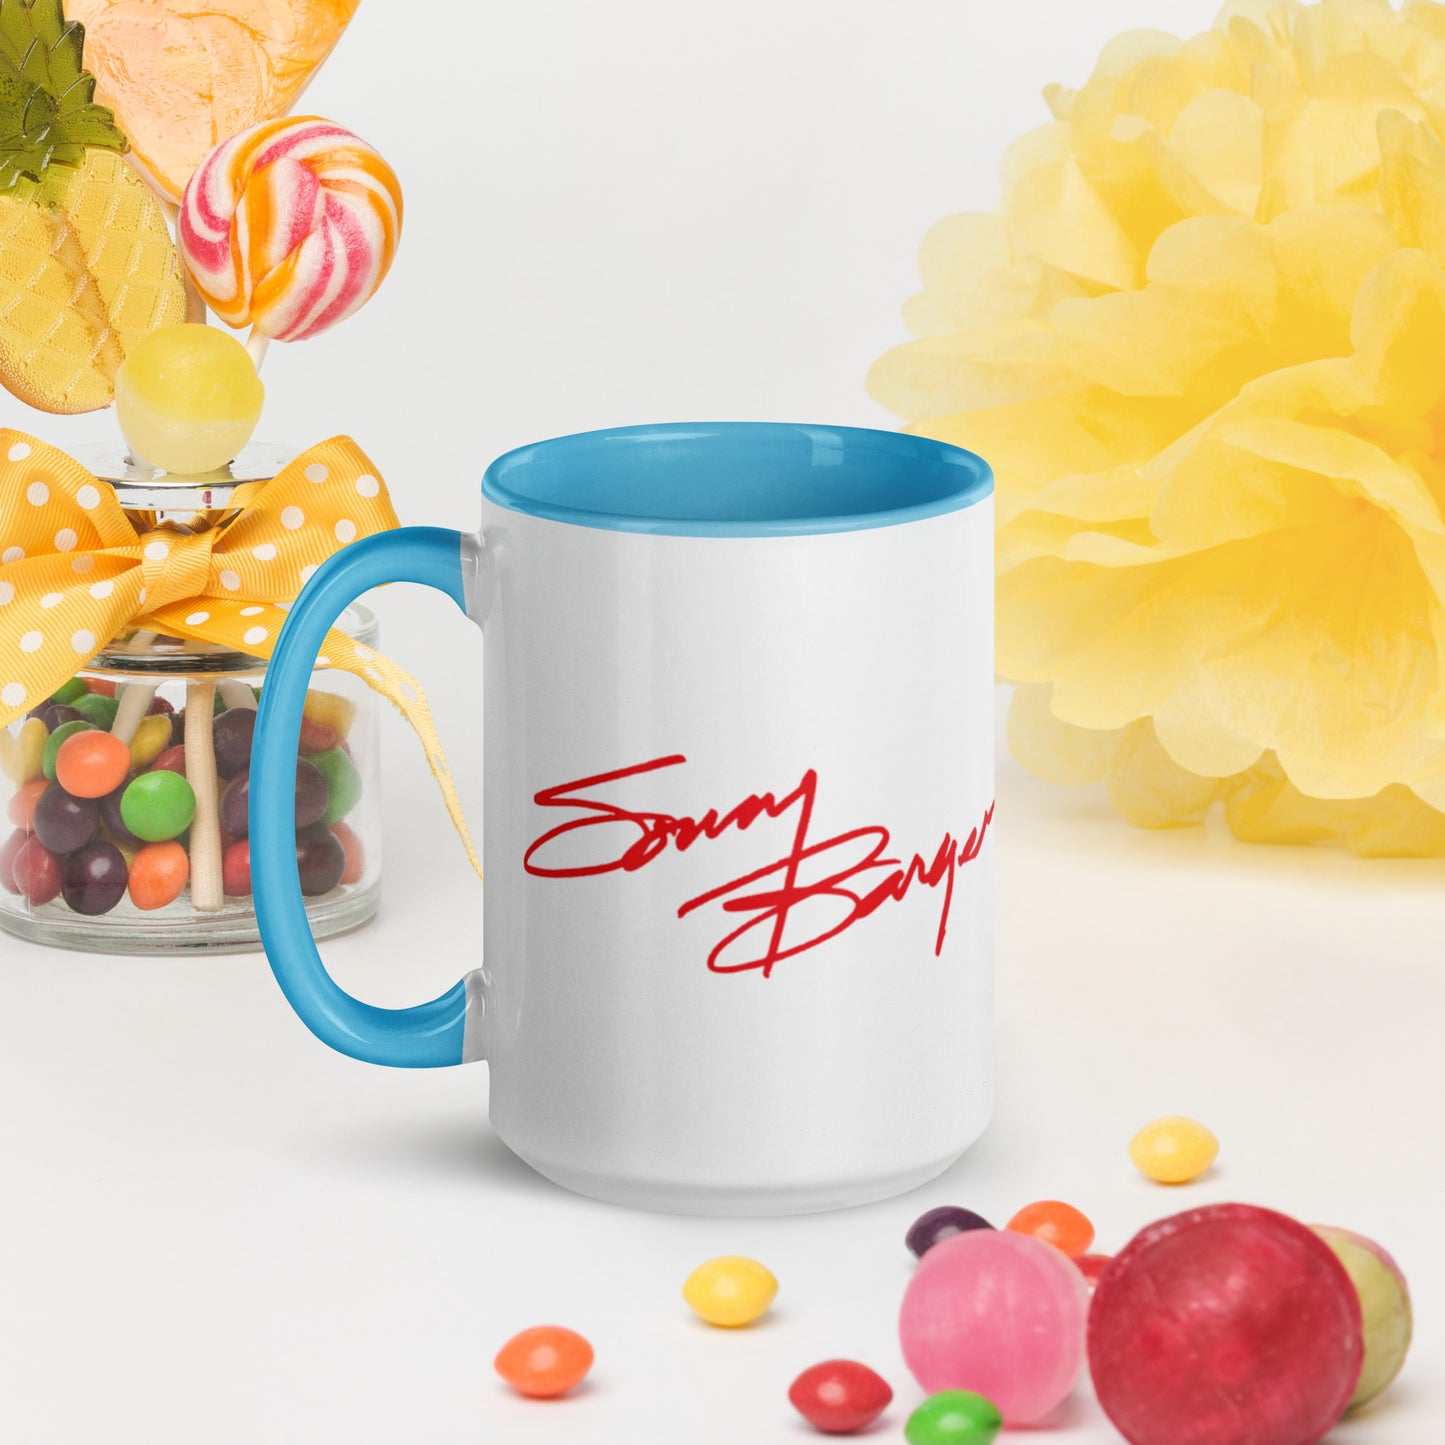 Sonny Barger American Legend -Mug with Color Inside